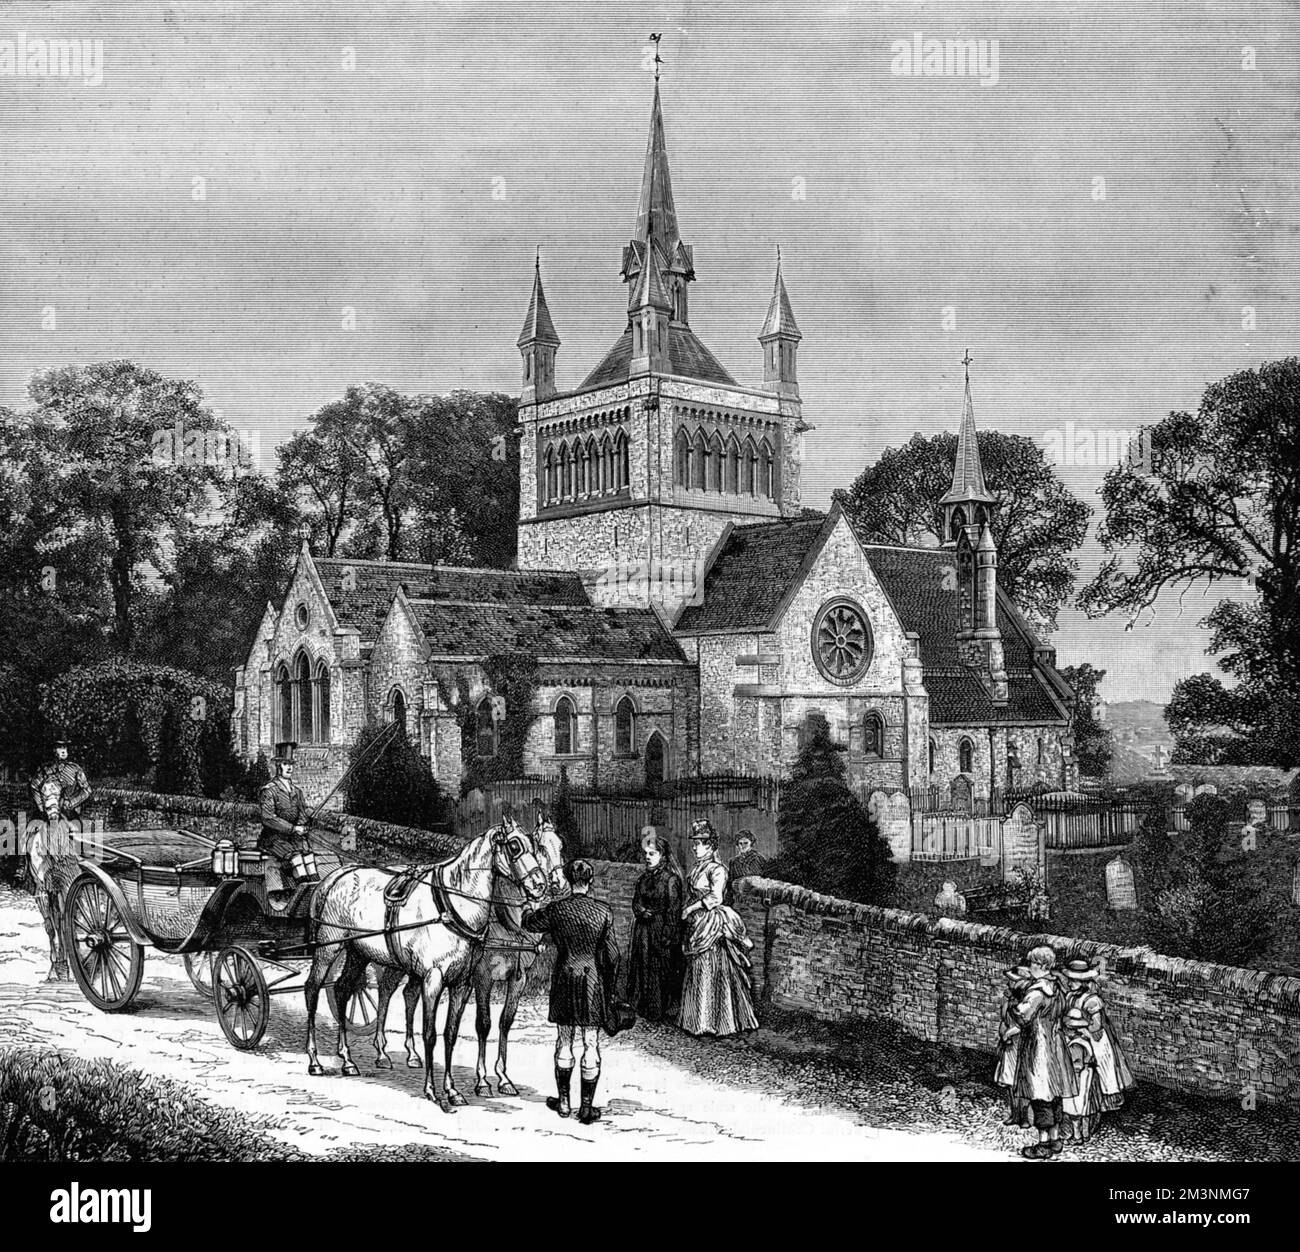 Whippingham Church auf der Isle of Wight, Veranstaltungsort für die königliche Hochzeit zwischen Prinzessin Beatrice, Tochter von Königin Victoria und dem Prinzengatten, und Prinz Henry von Battenberg im August 1885. Datum: 1885 Stockfoto